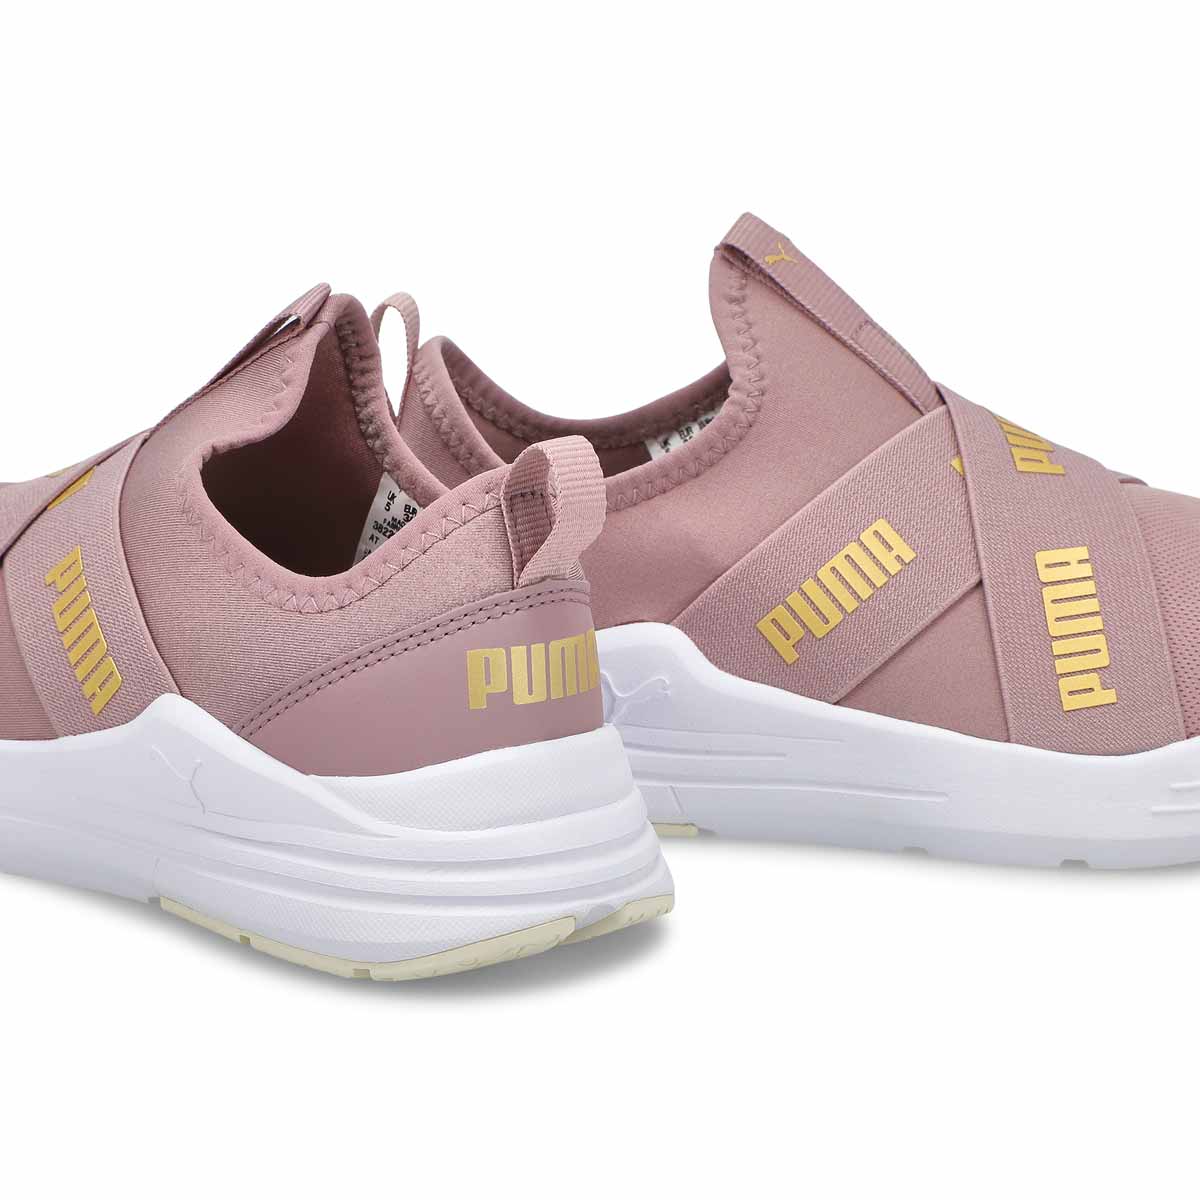 Women's Wired Run Slip On Sneaker - Quarry/Gold